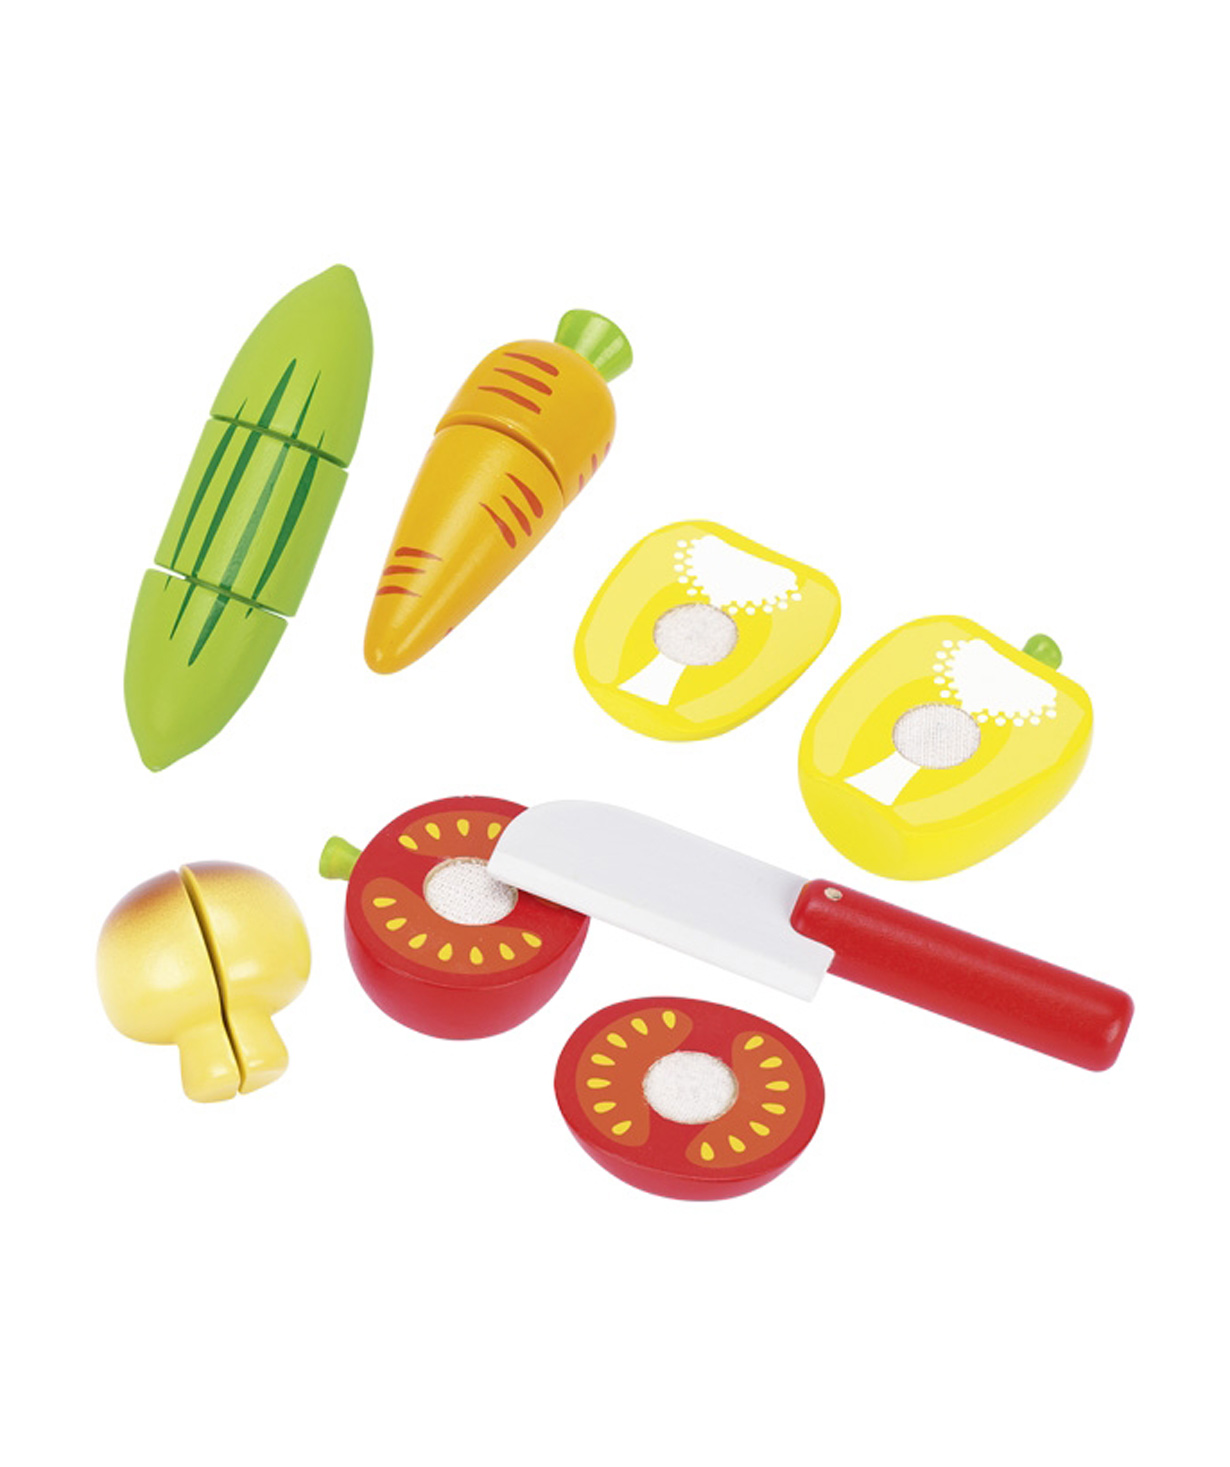 Խաղալիք «Goki Toys» բանջարեղեն ինքնակպչունի վրա